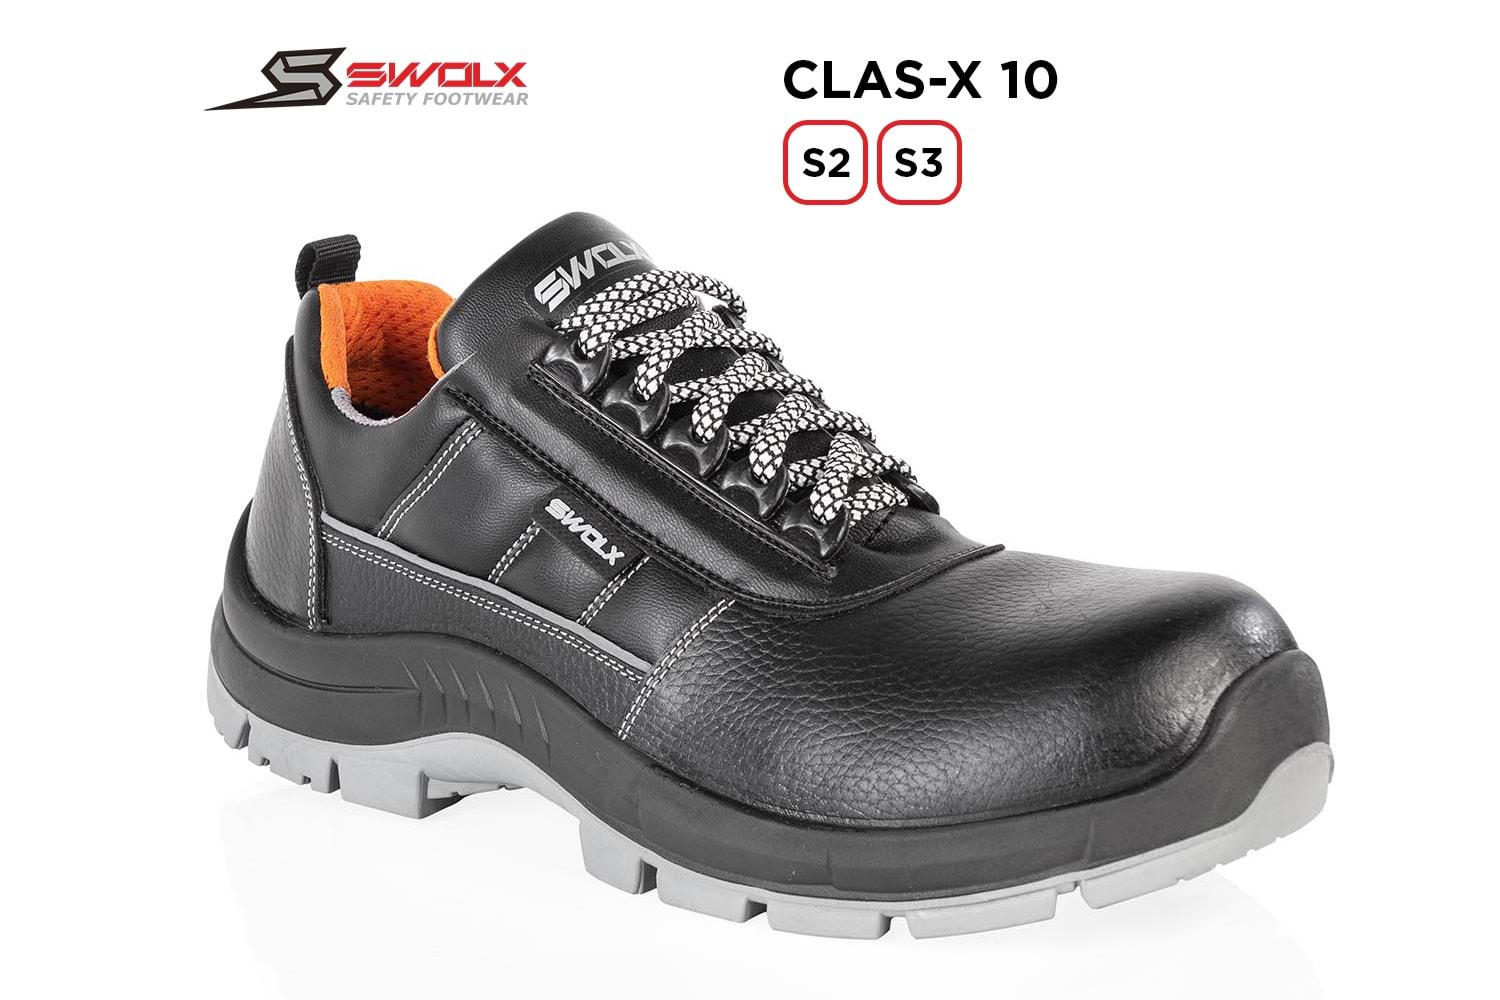 Swolx İş Ayakkabısı - Clas-X 10 S2 - 42